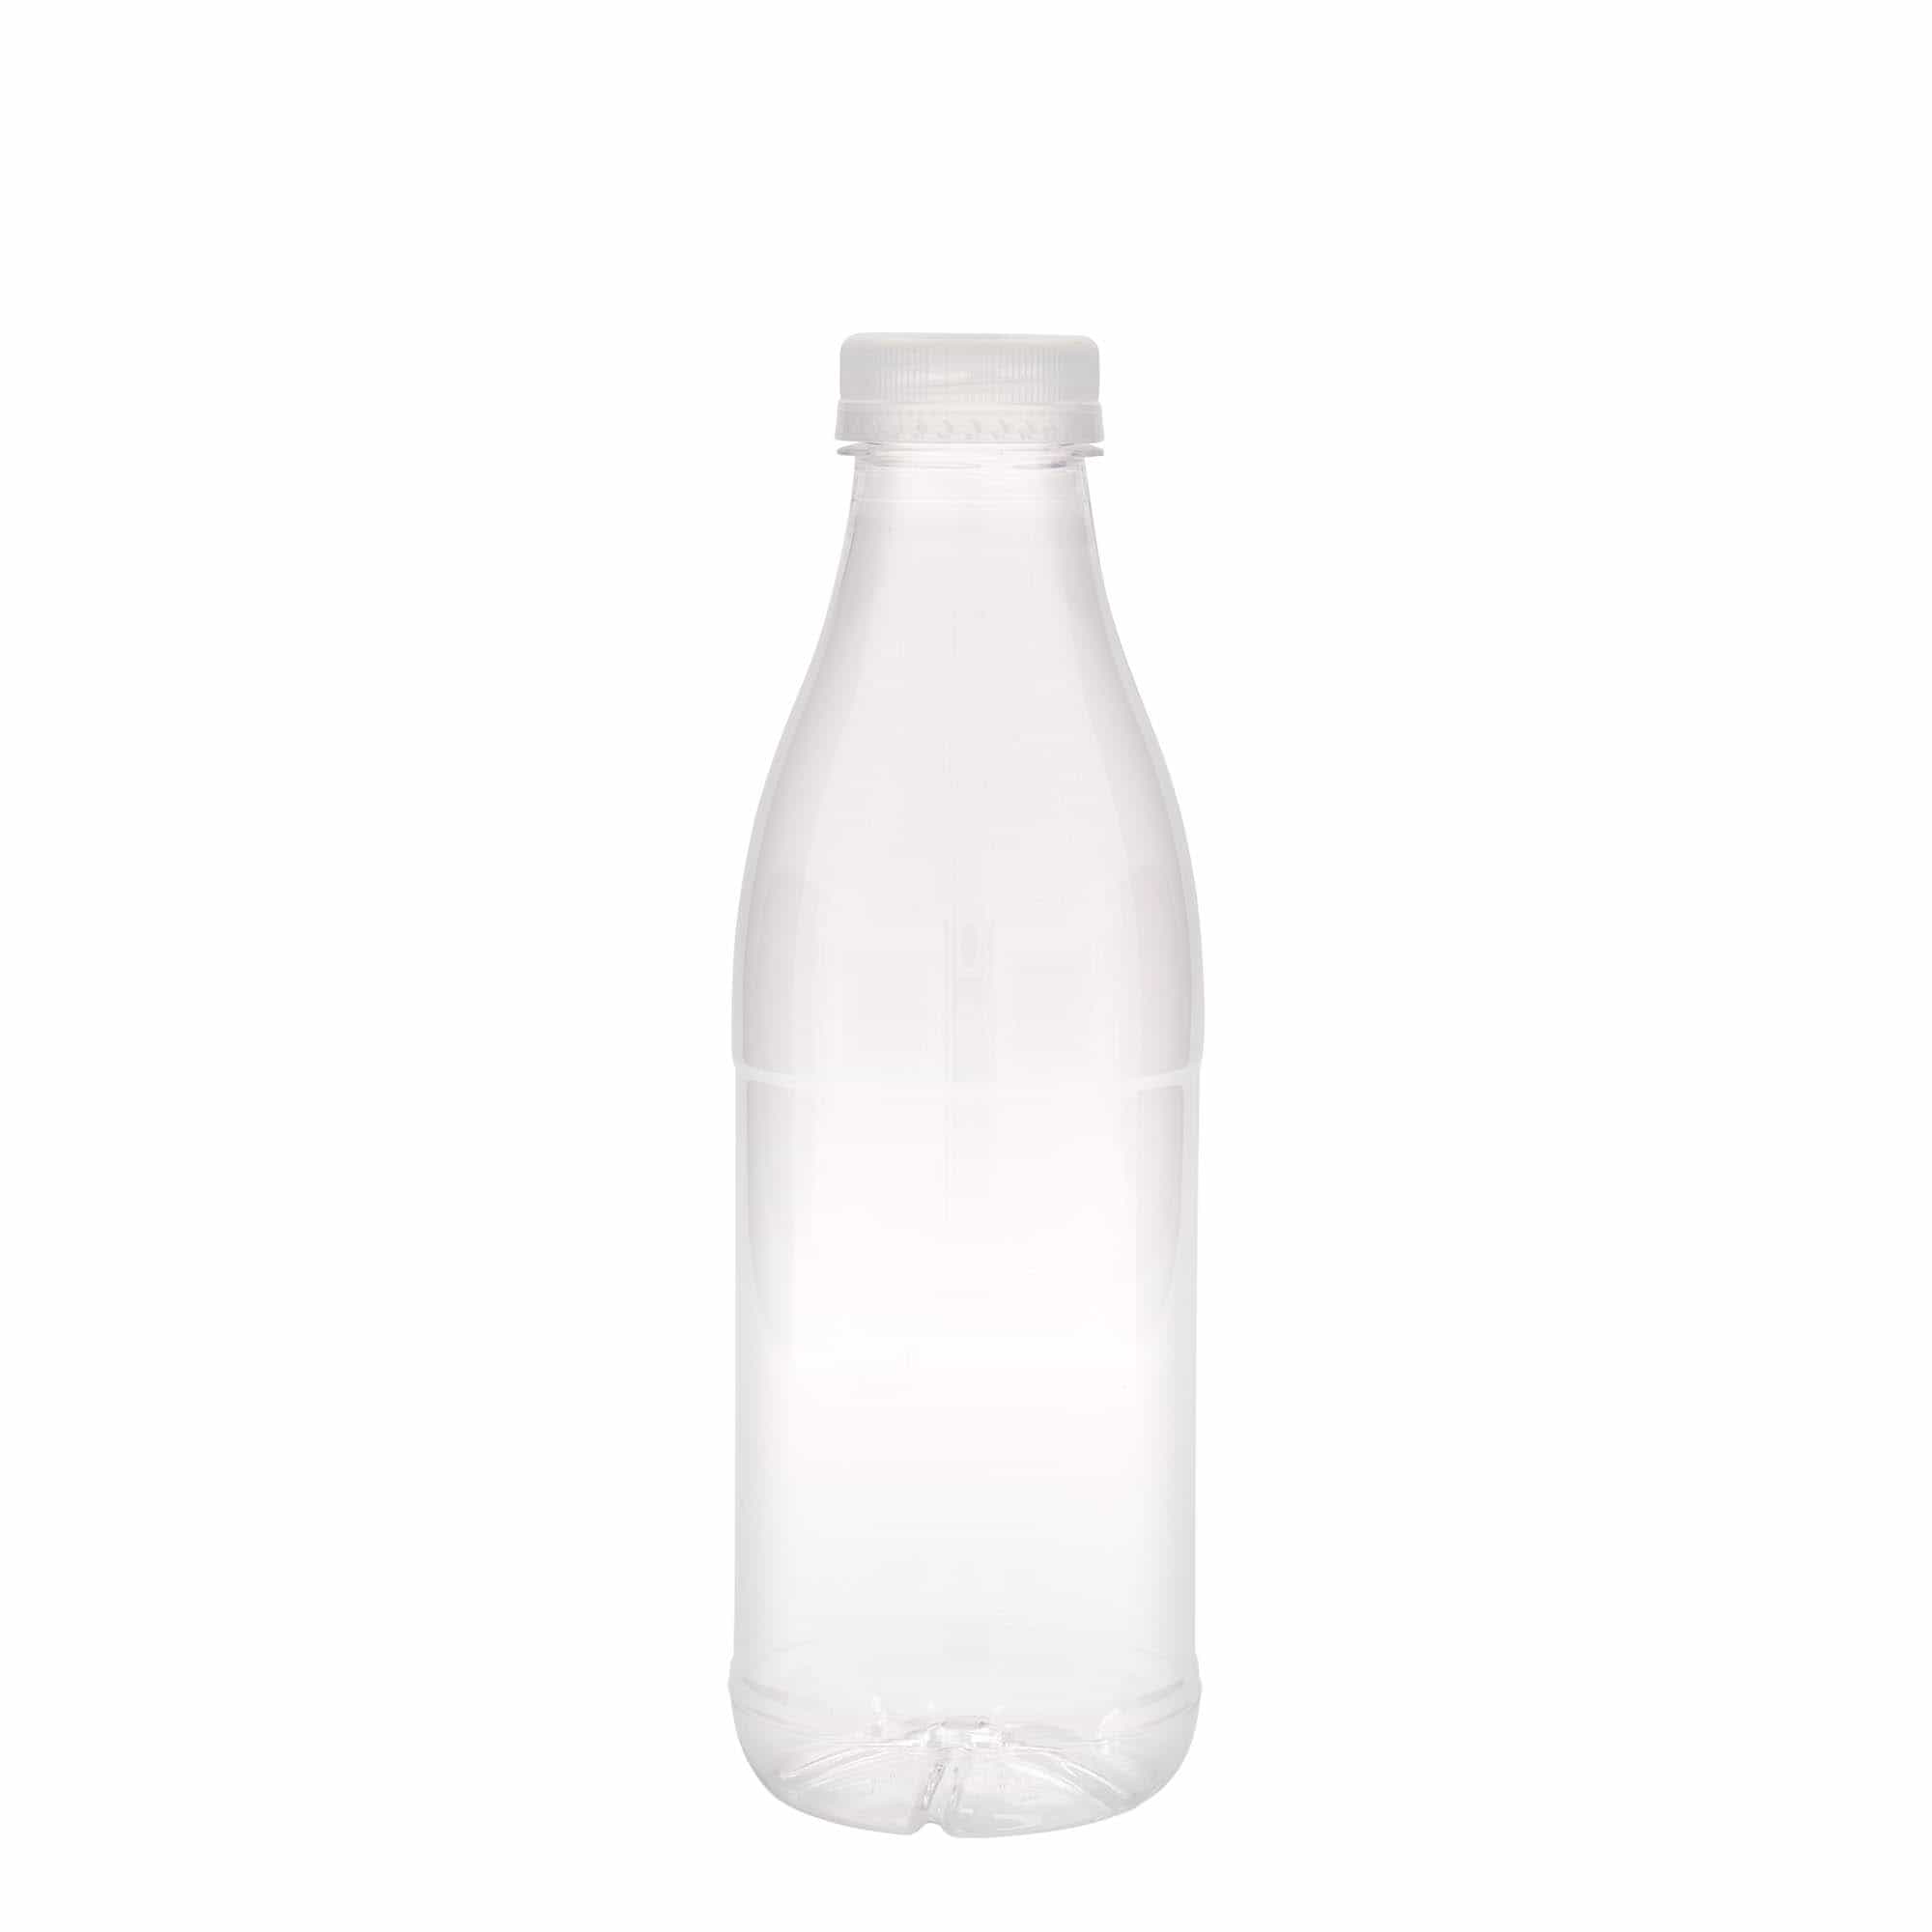 750 ml PET bottle 'Milk and Juice', plastic, closure: 38 mm